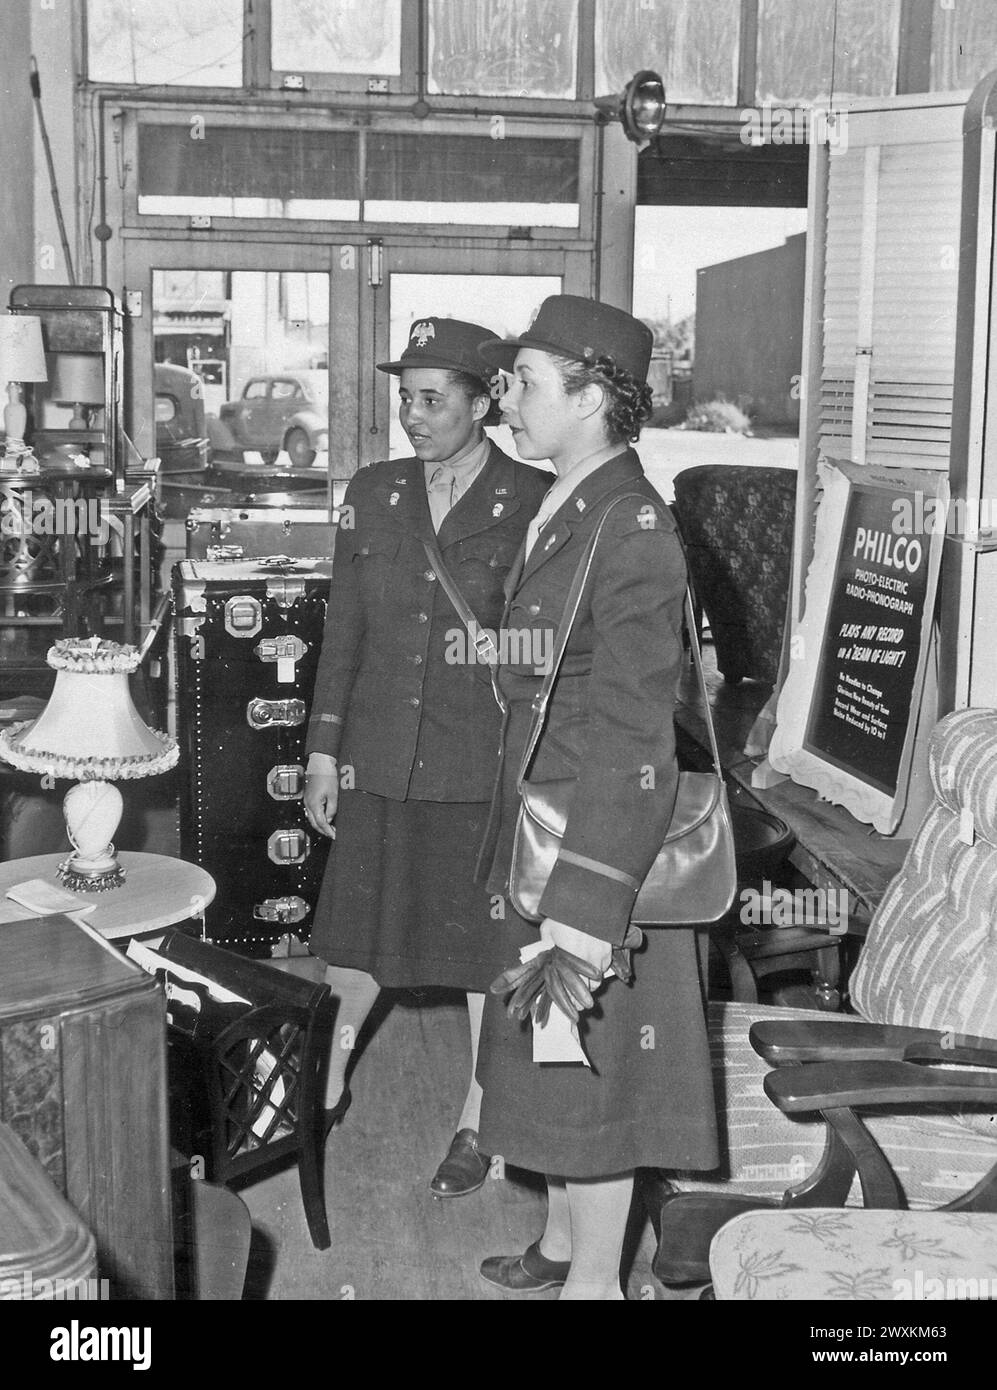 Gli agenti del WAAC vanno a fare shopping... subito dopo il loro arrivo a Fort Huachuca, Arizona, questi due agenti hanno iniziato a comprare lampade e altri accessori necessari nella loro sala ricreativa, CA. 1942 Foto Stock